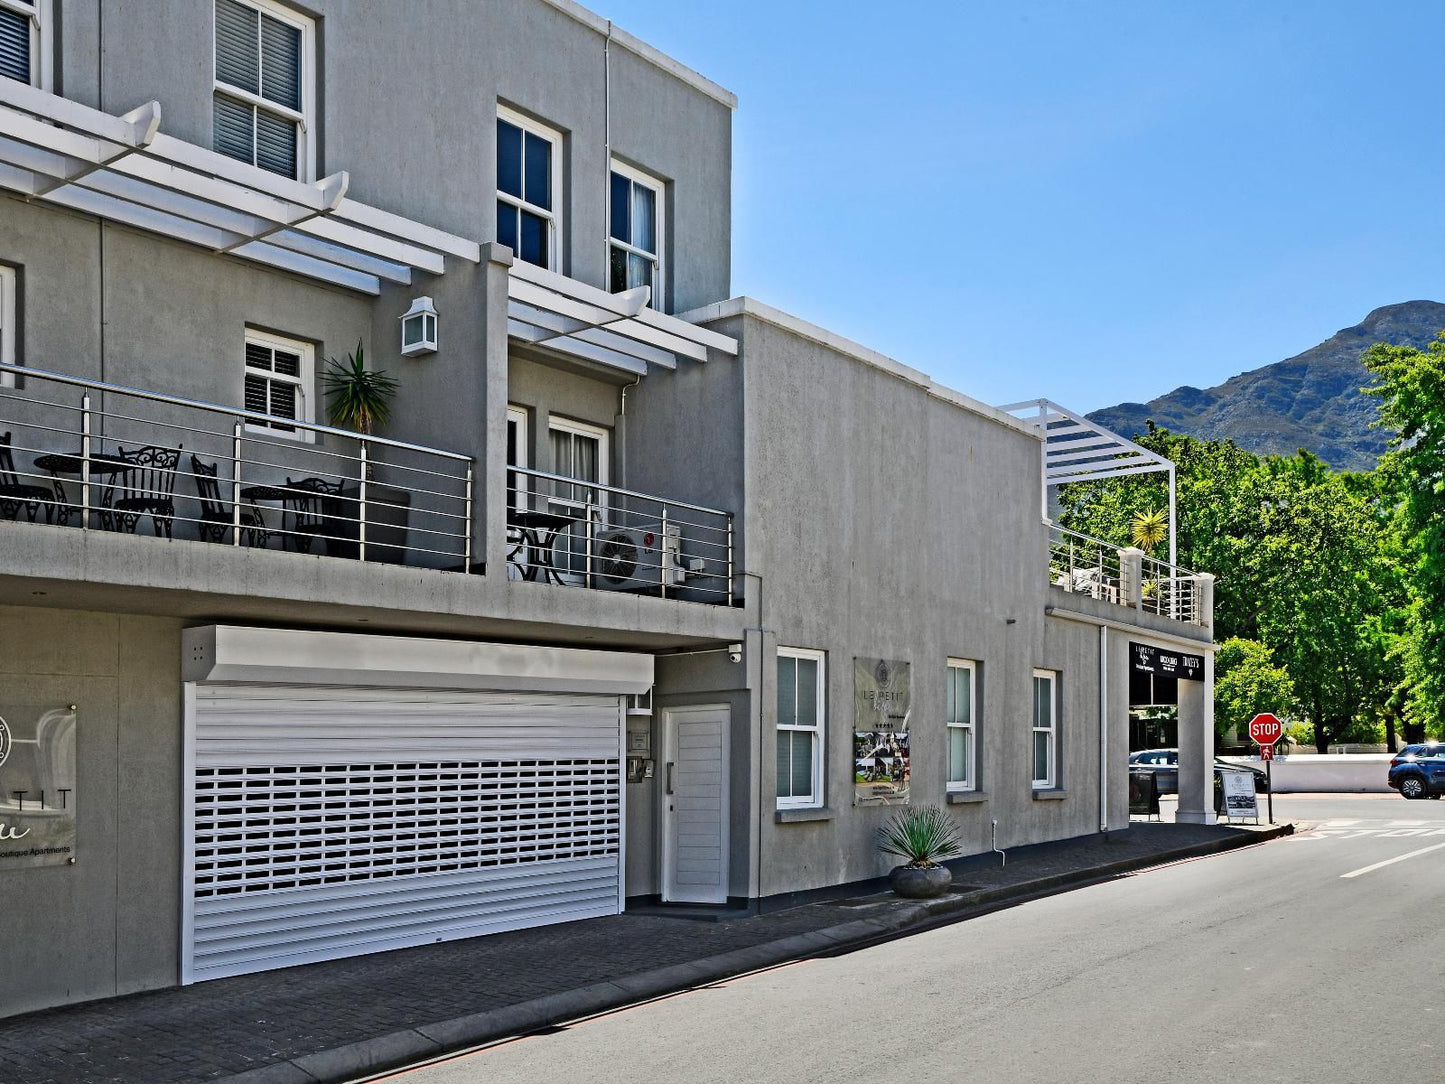 Le Petit Bijou Boutique Apartments Franschhoek Western Cape South Africa House, Building, Architecture